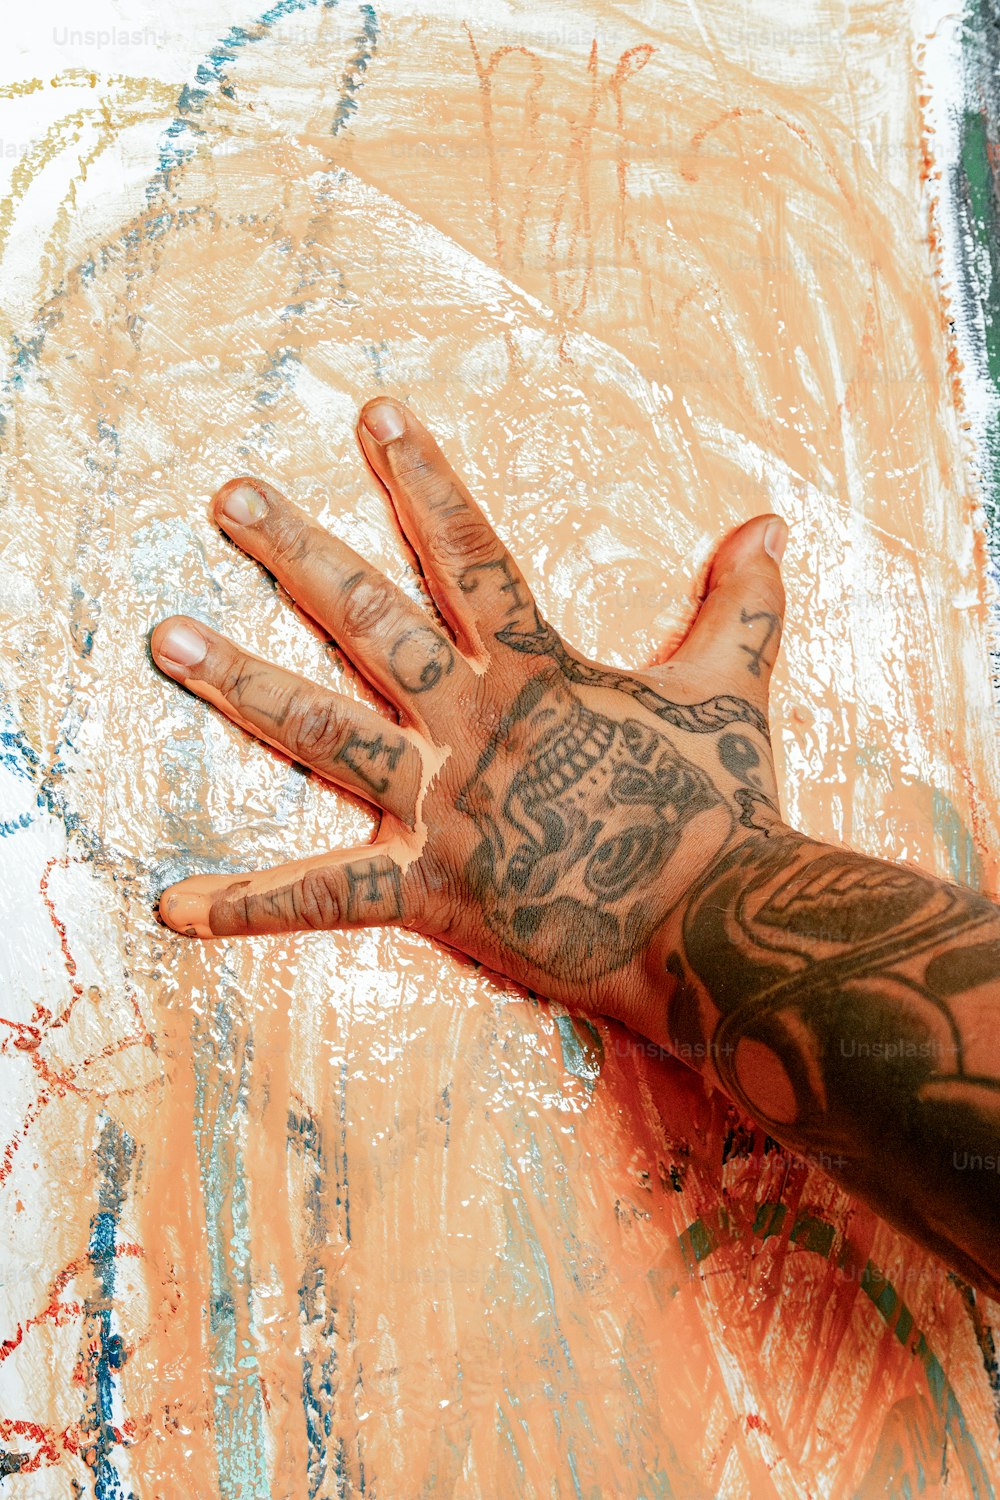 La mano di una persona con tatuaggi su di essa